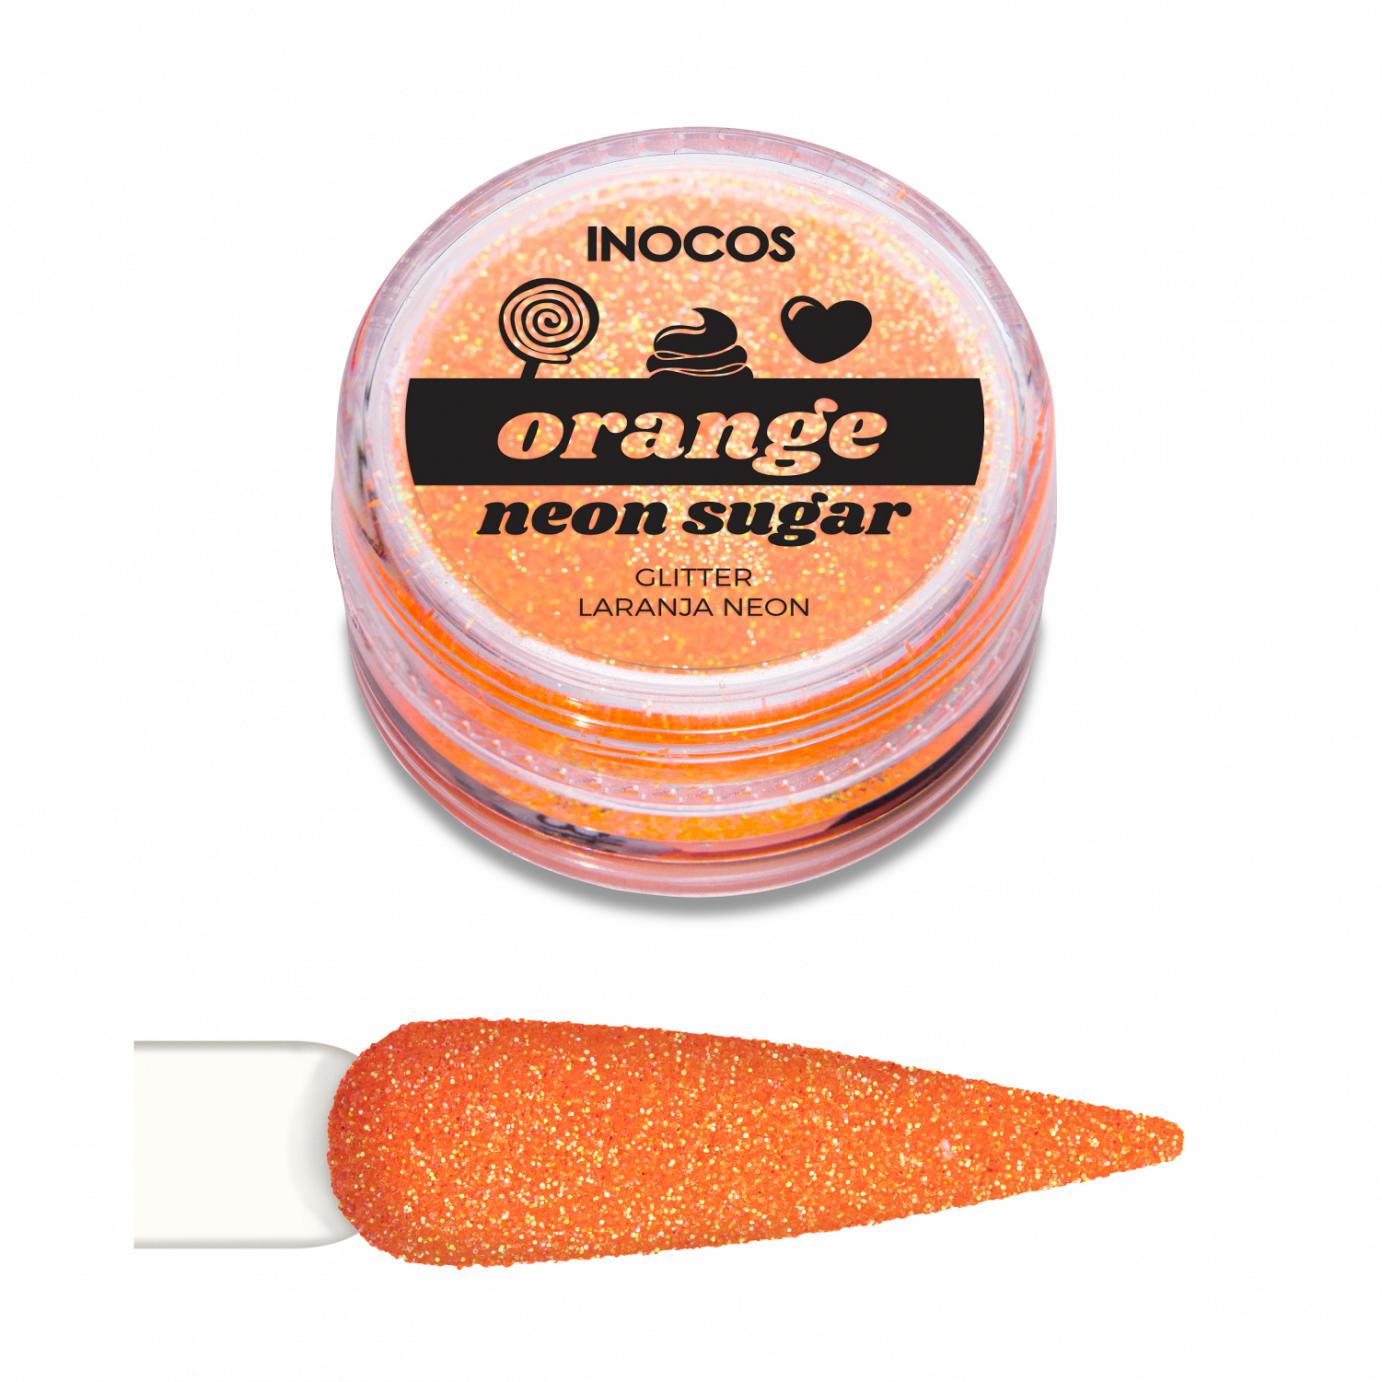 Inocos glitter para unhas pó Neon Sugar orange